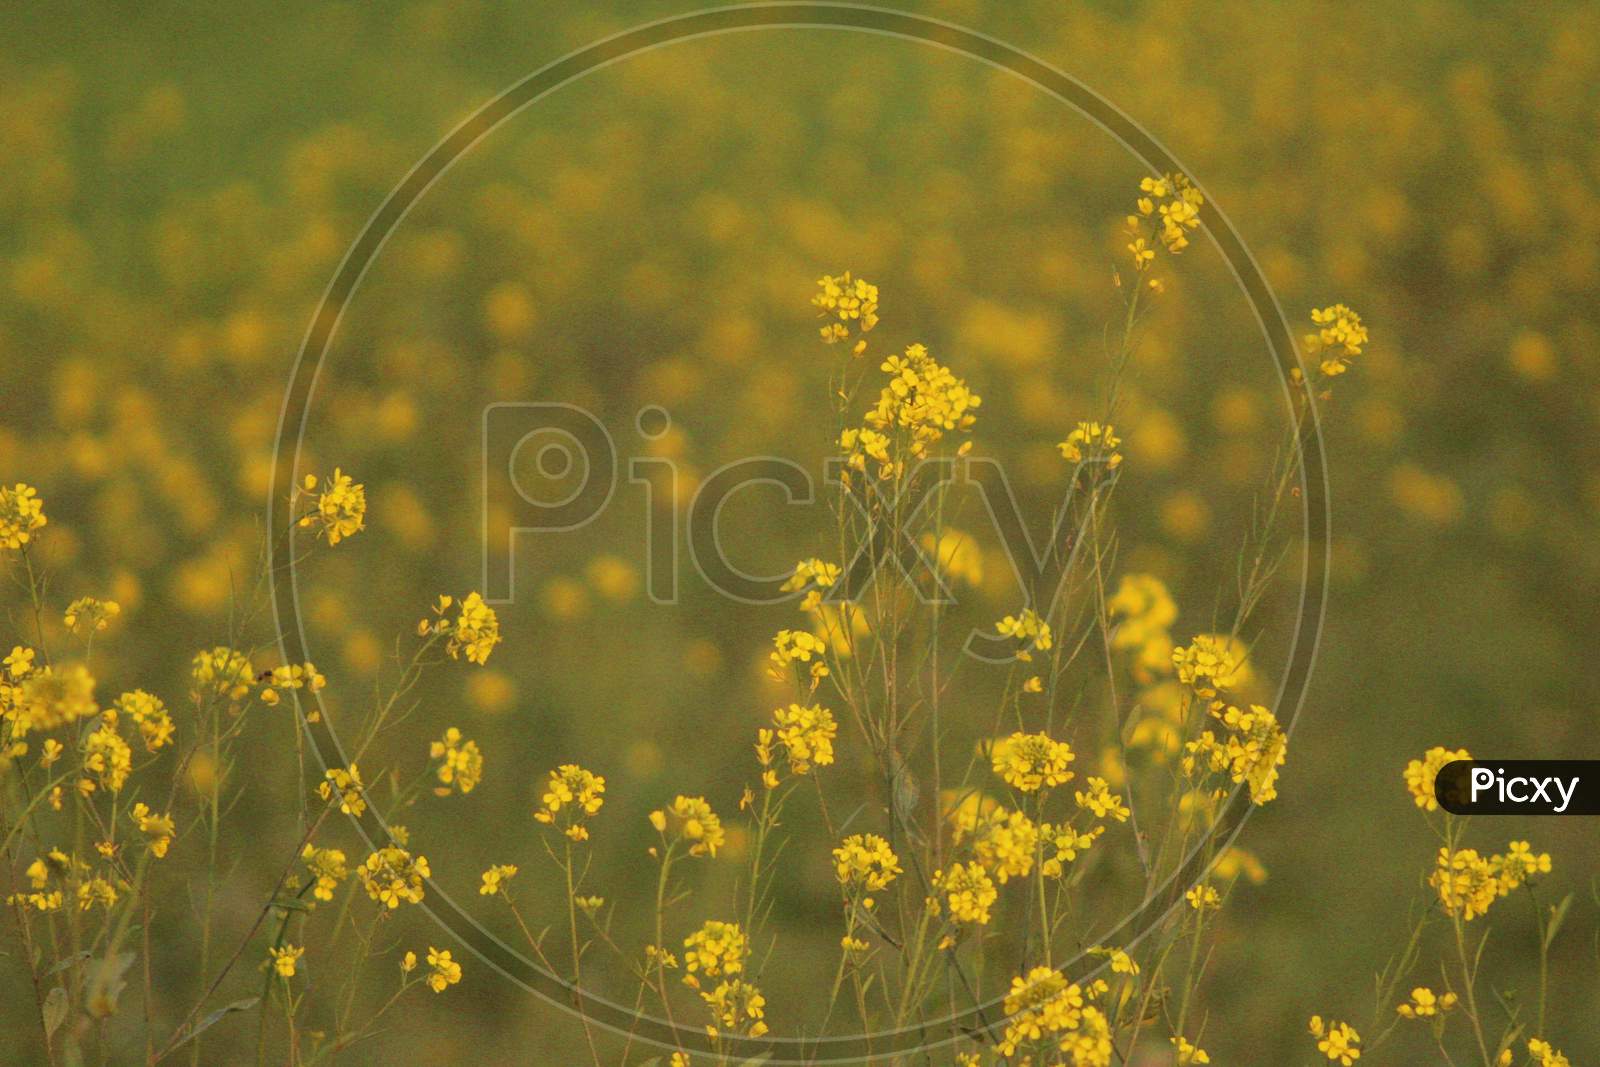 Mustard Flower, Photo